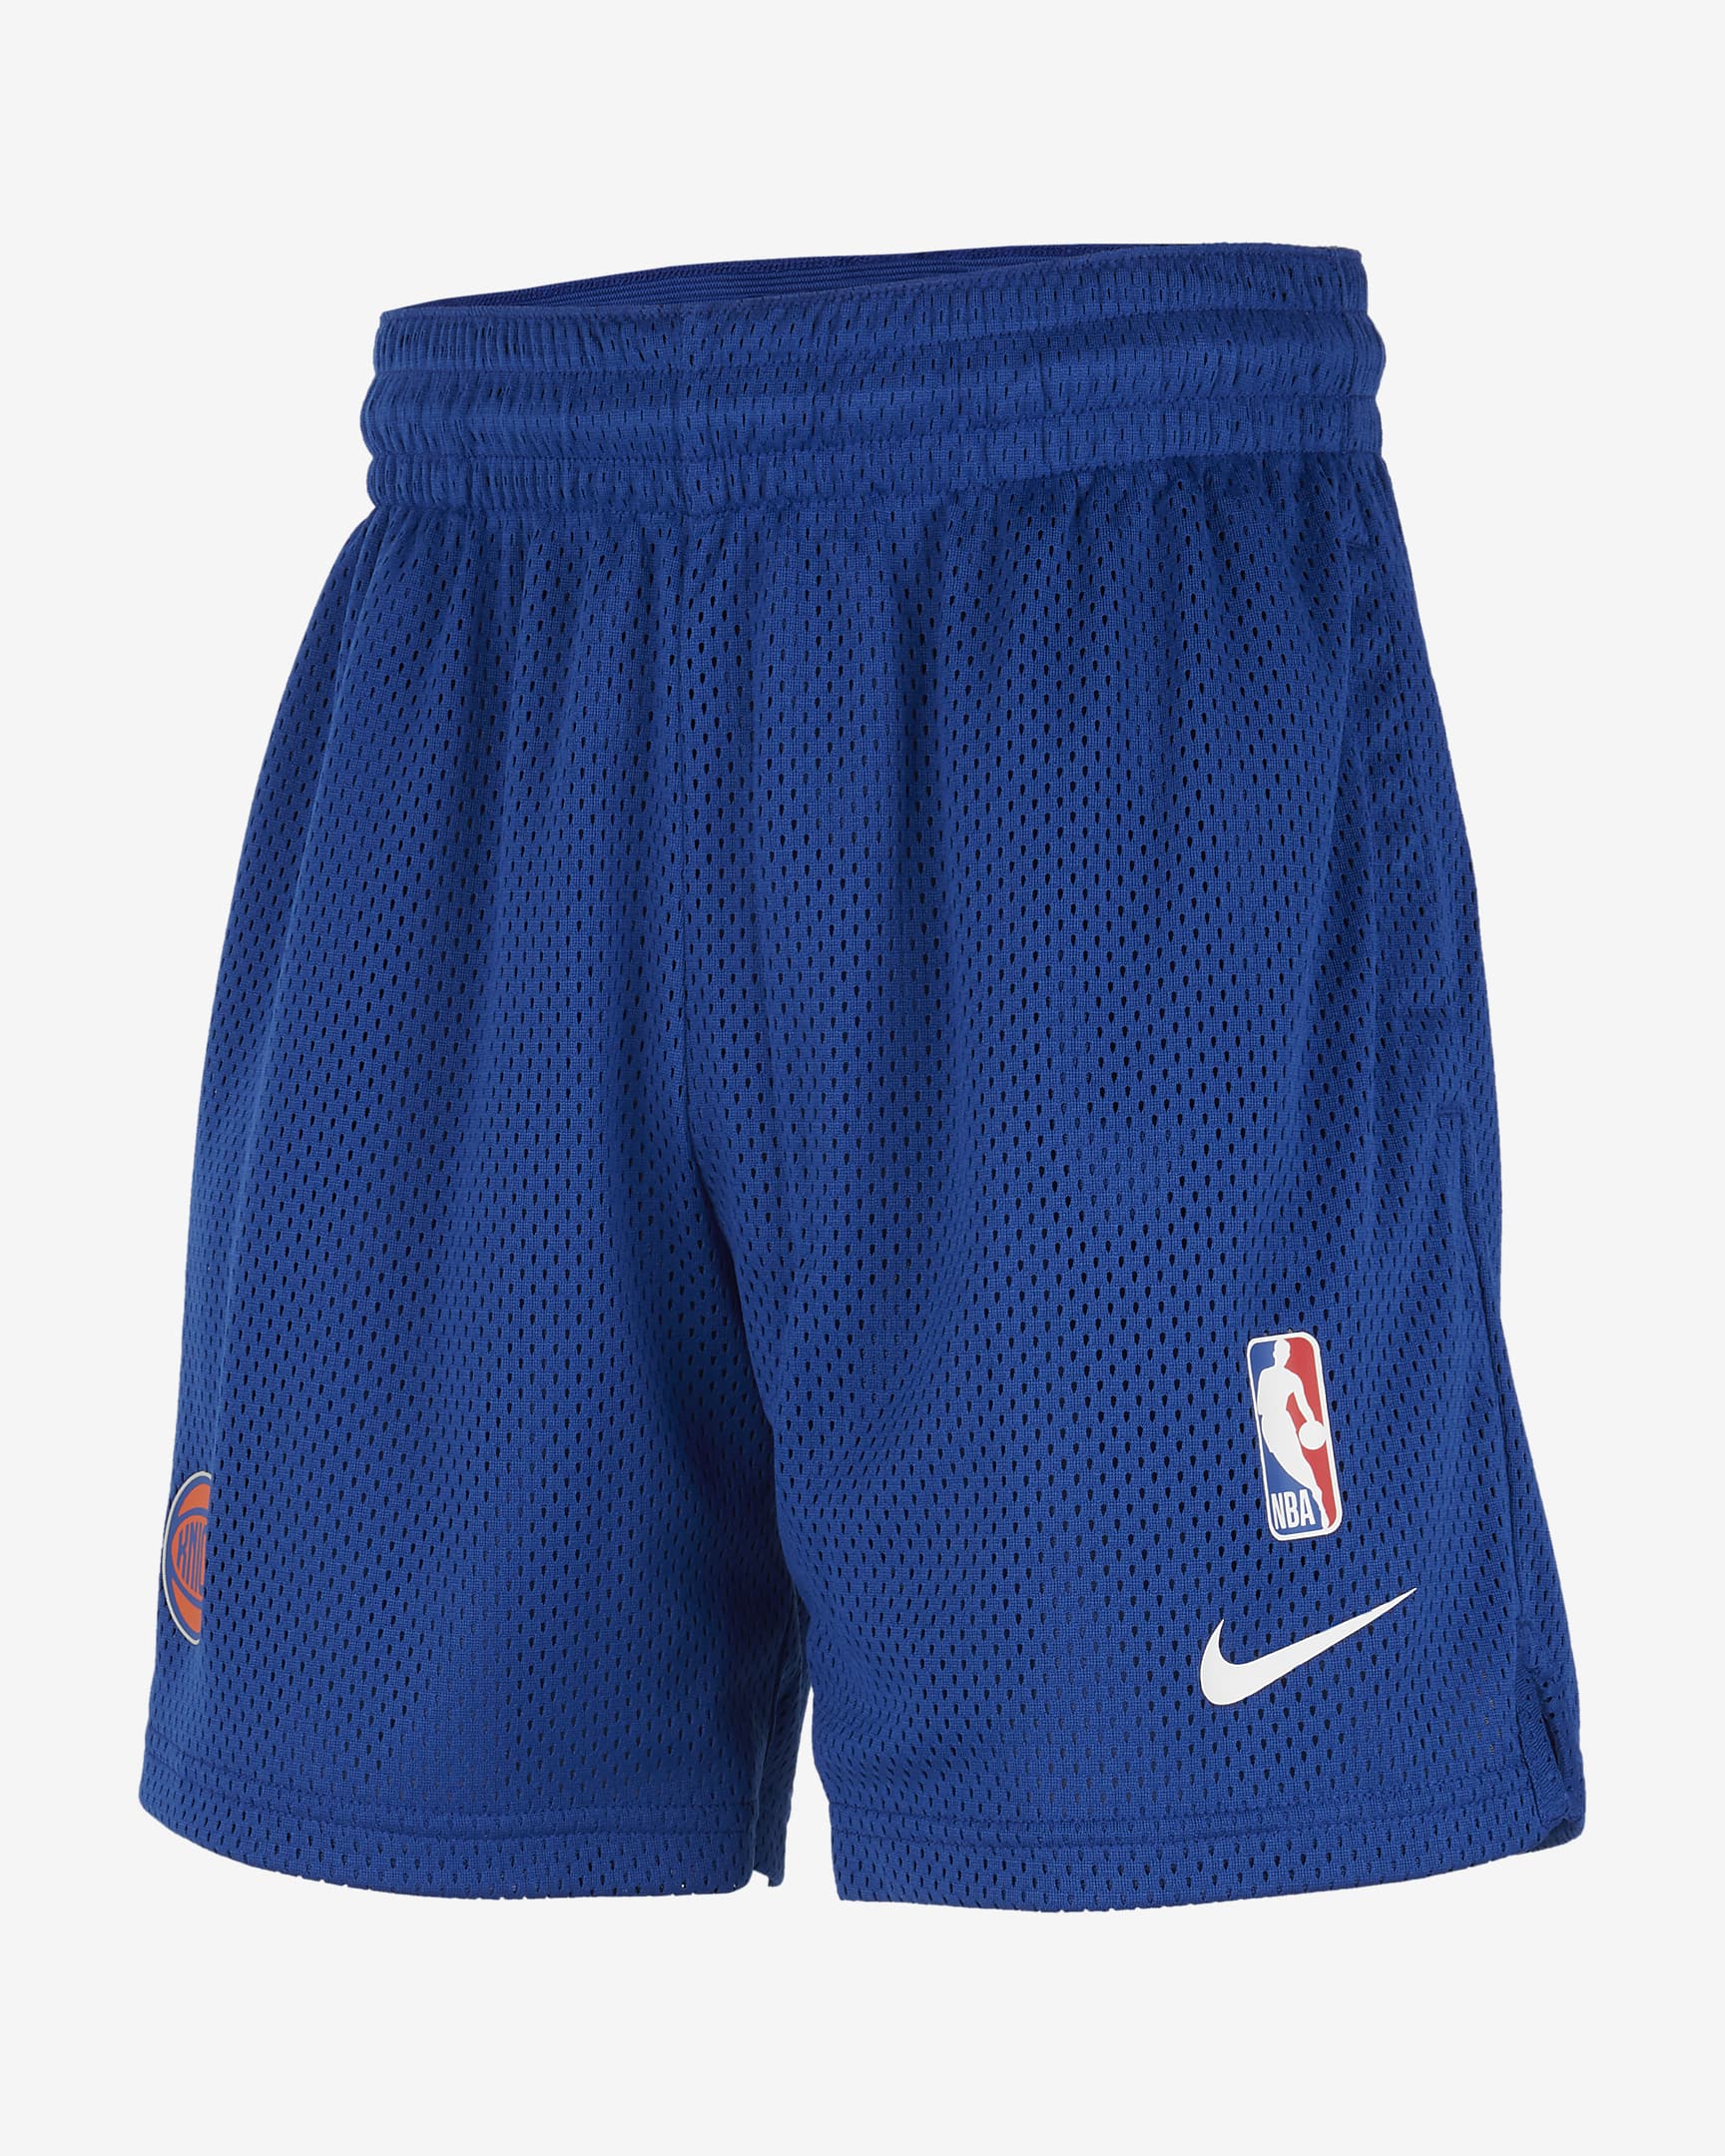 New York Knicks Spotlight Big Kids' Nike Dri-FIT NBA Shorts. Nike.com